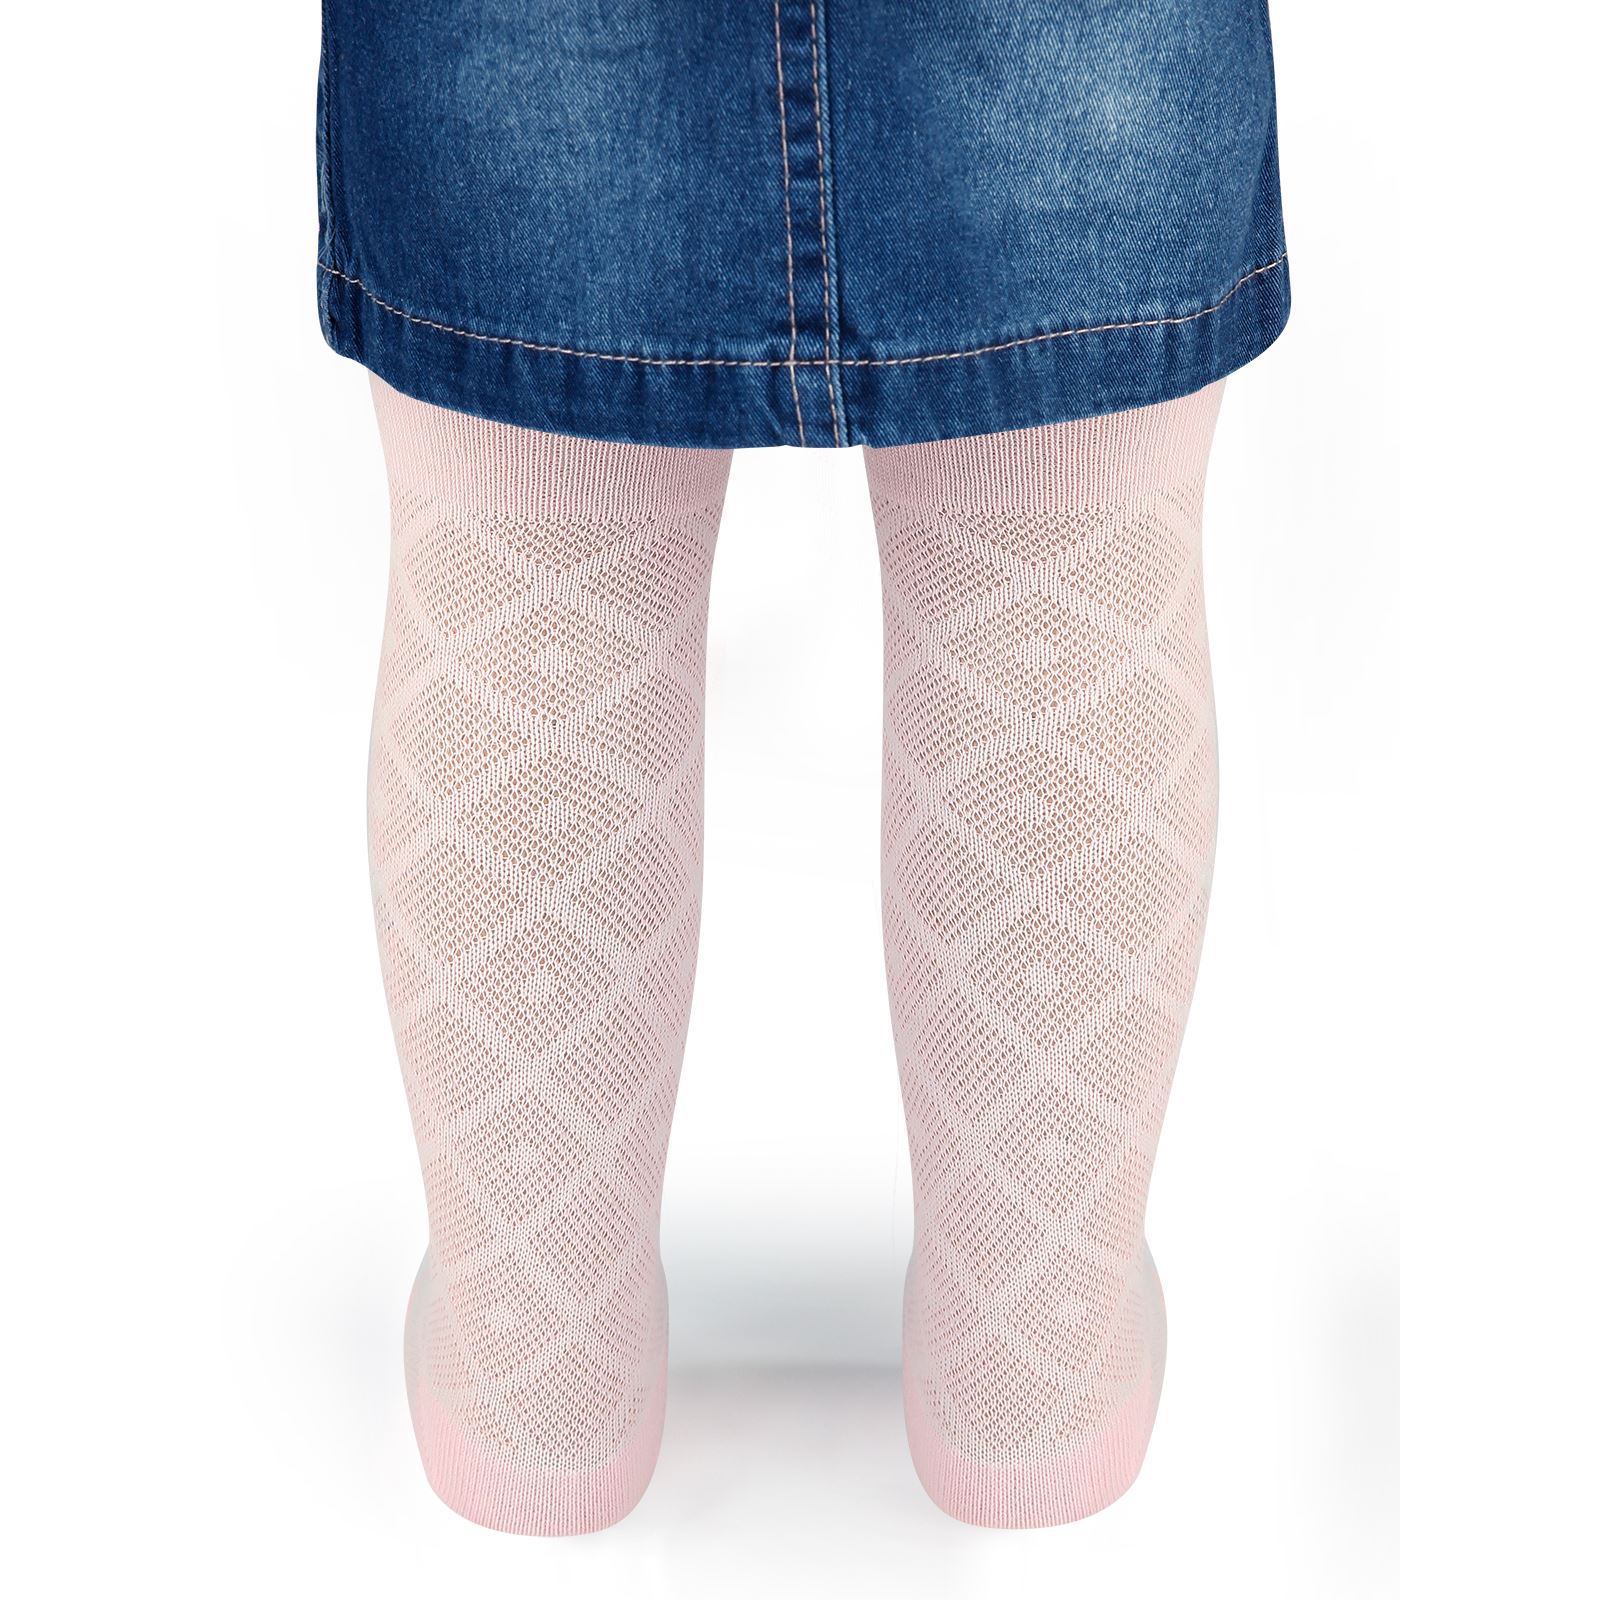 Civil Baby Kız Bebek Külotlu Çorap 0-24 Ay Pembe